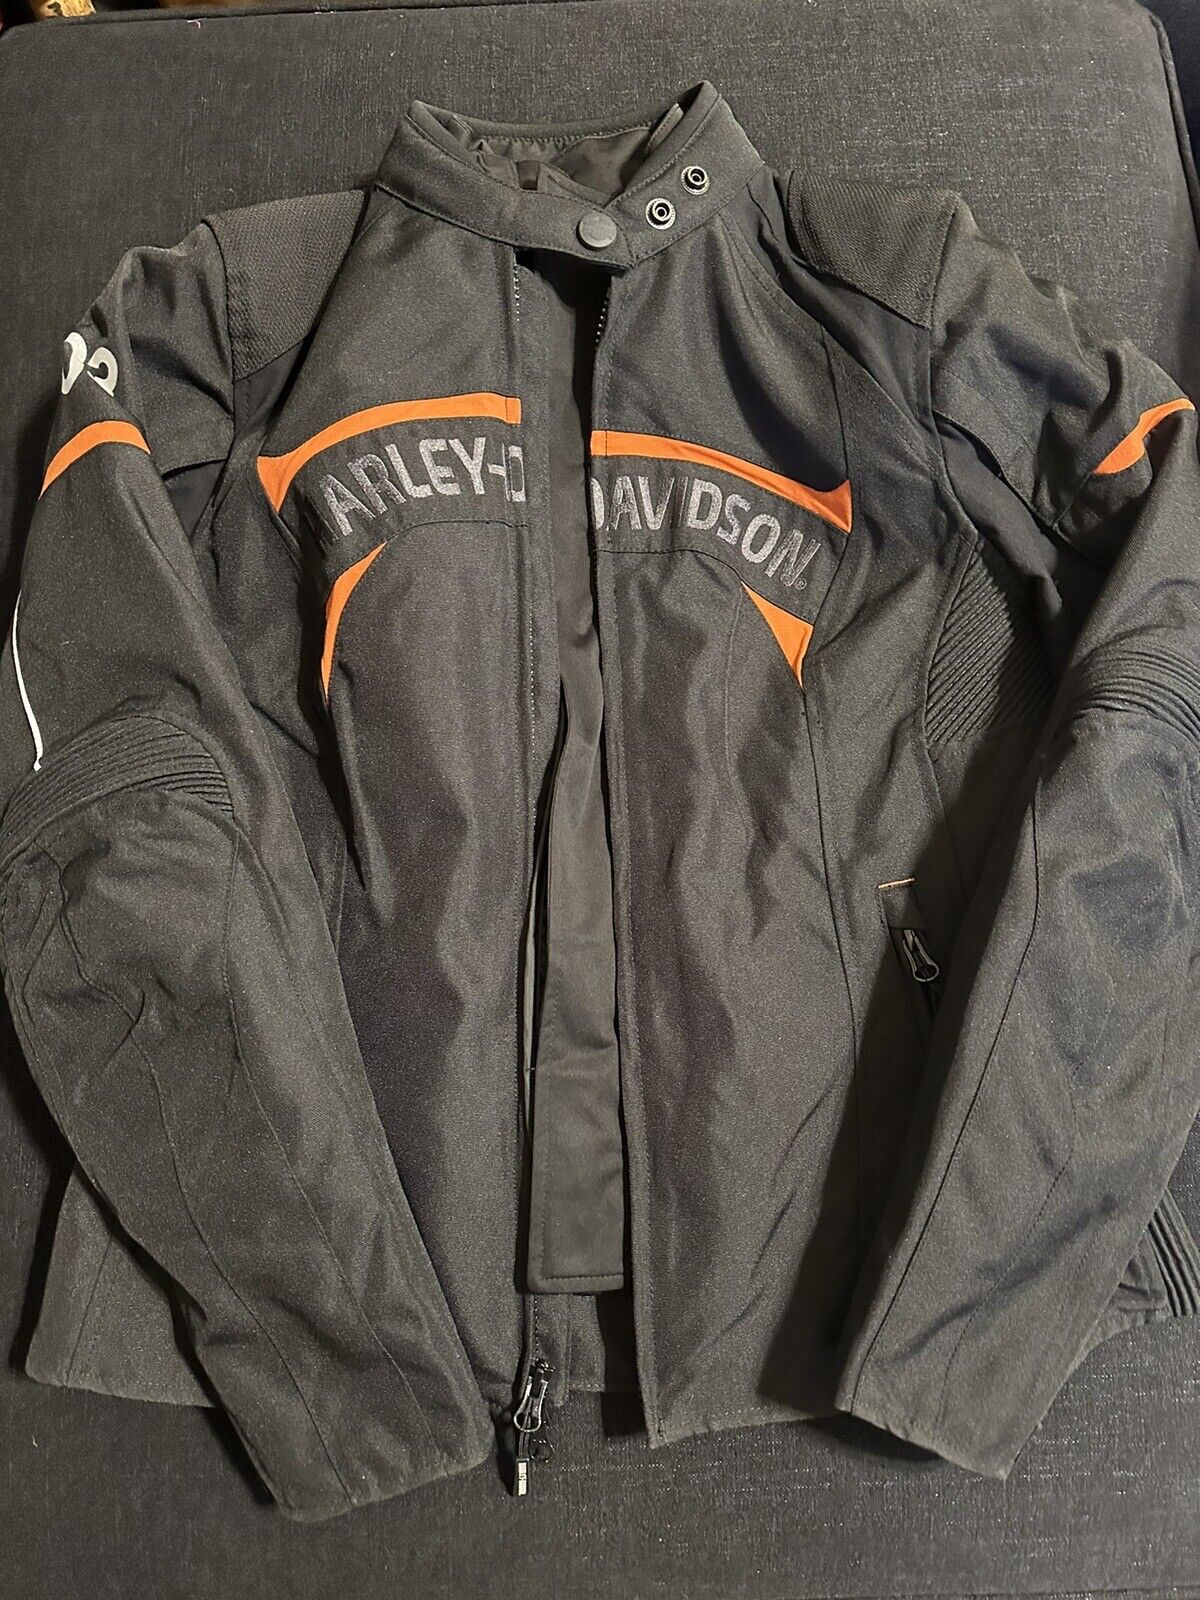 harley davidson womens mesh riding jacket Black Orange Lined Water Resistant Med